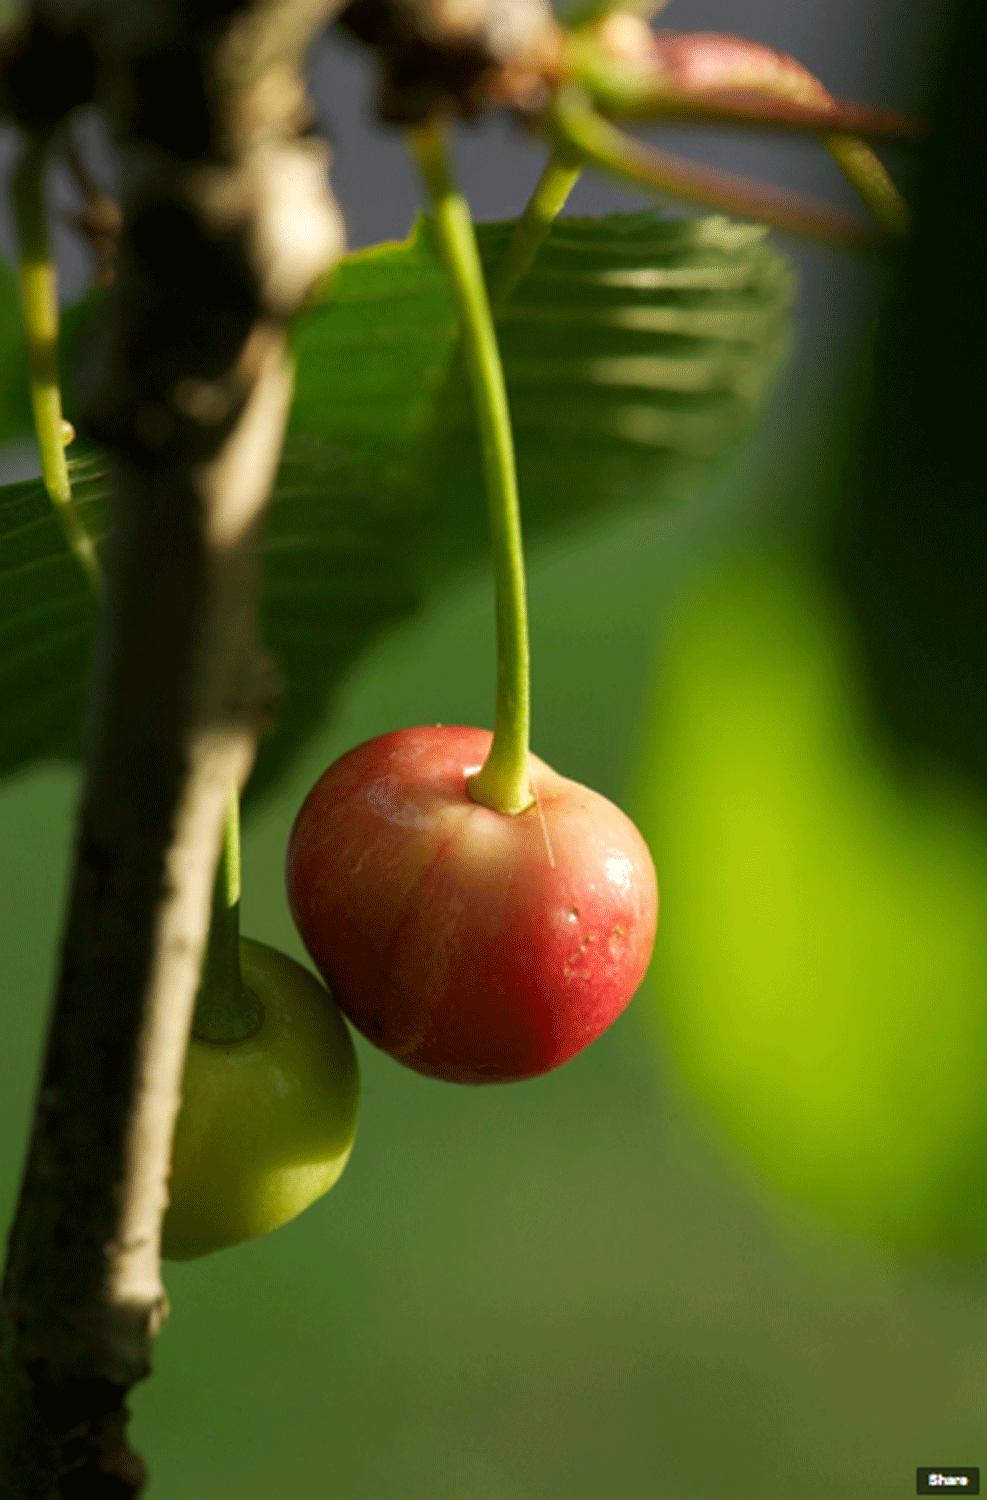 The Cherry Tree Anecdote